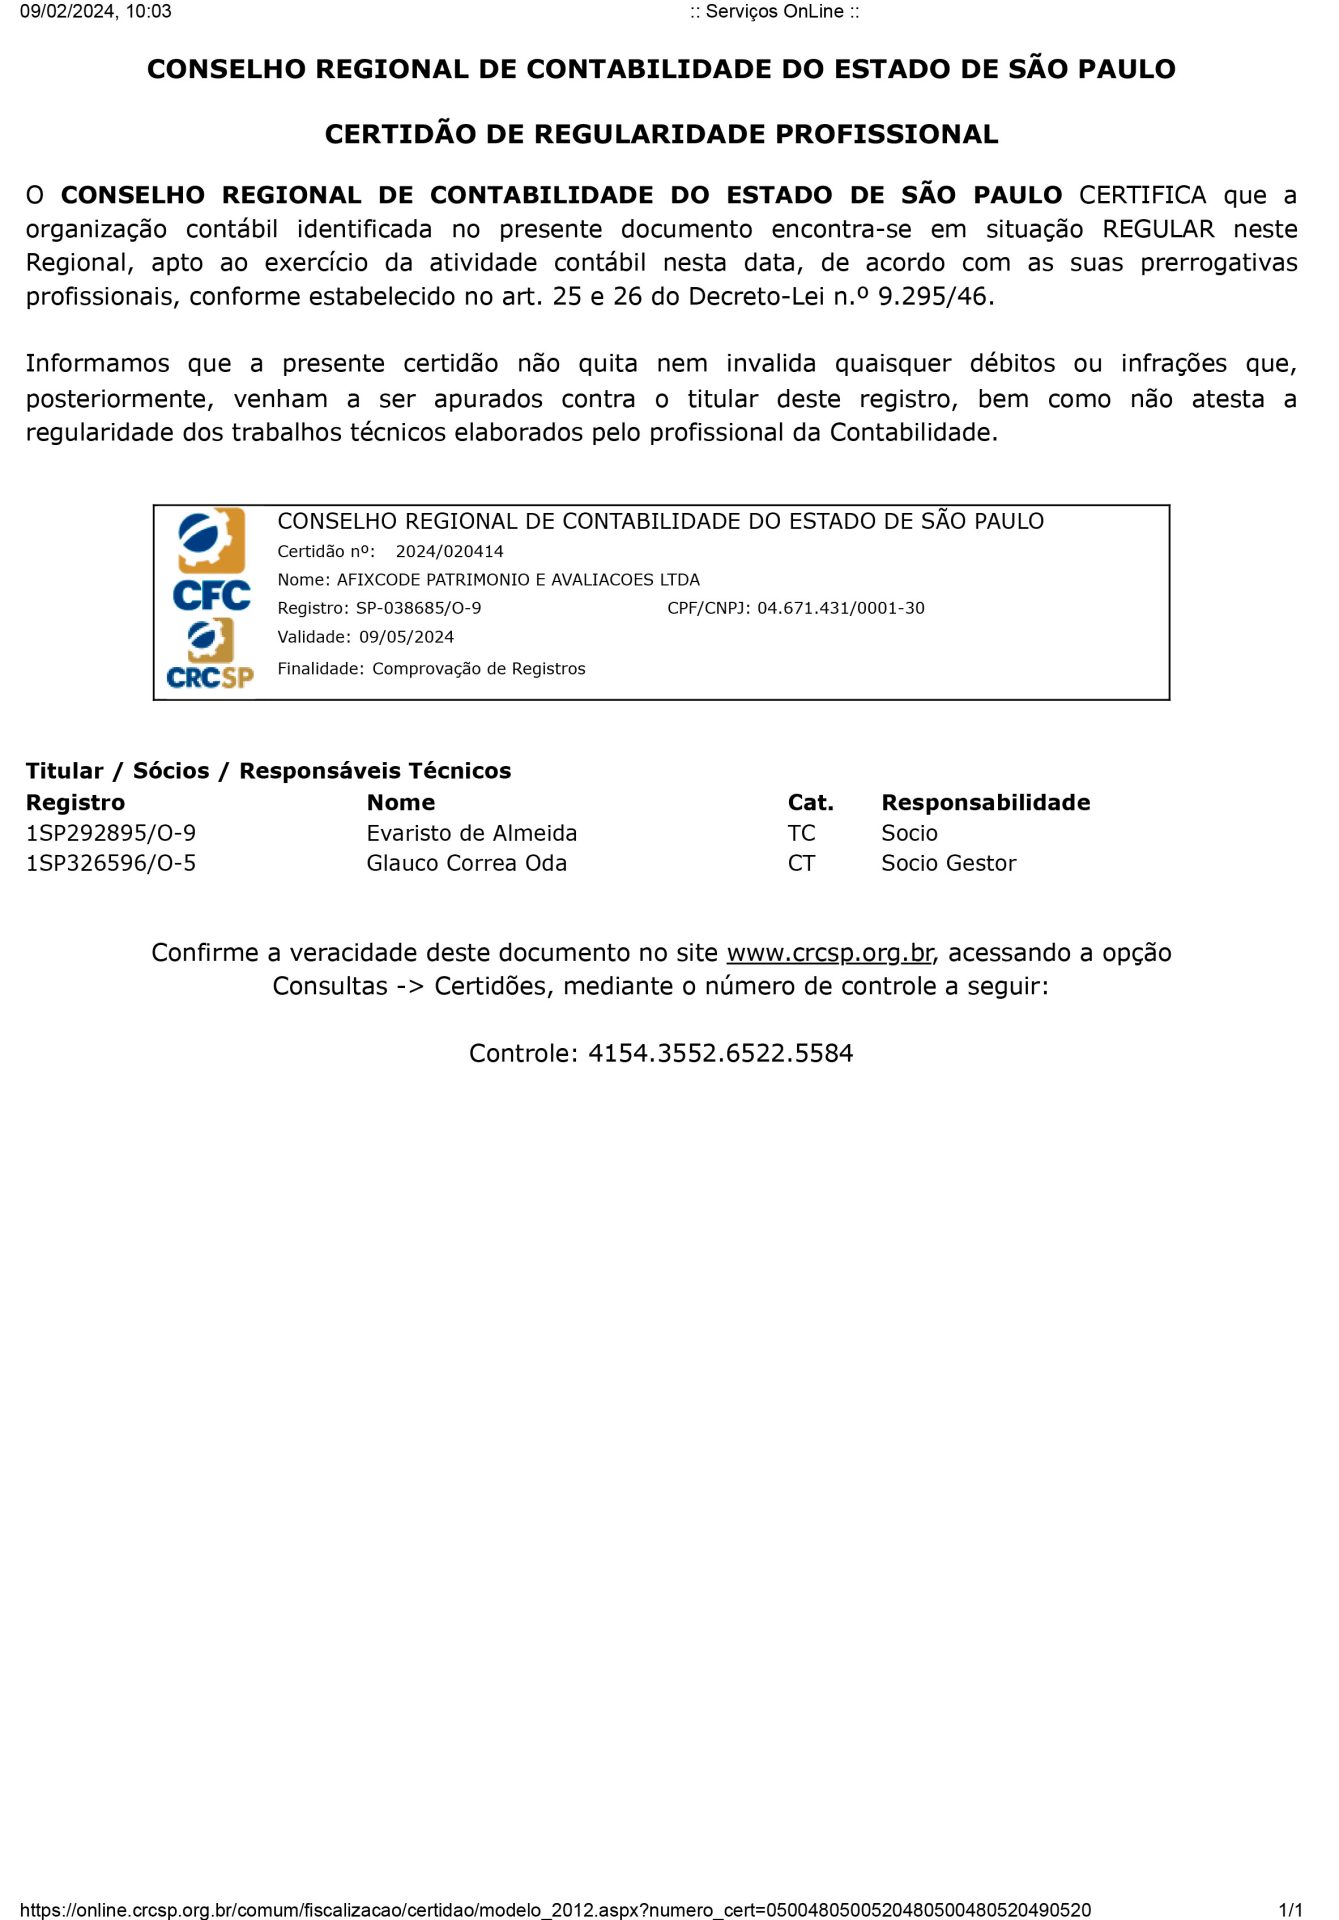 Certificado CRC Afixcode PJ 2022